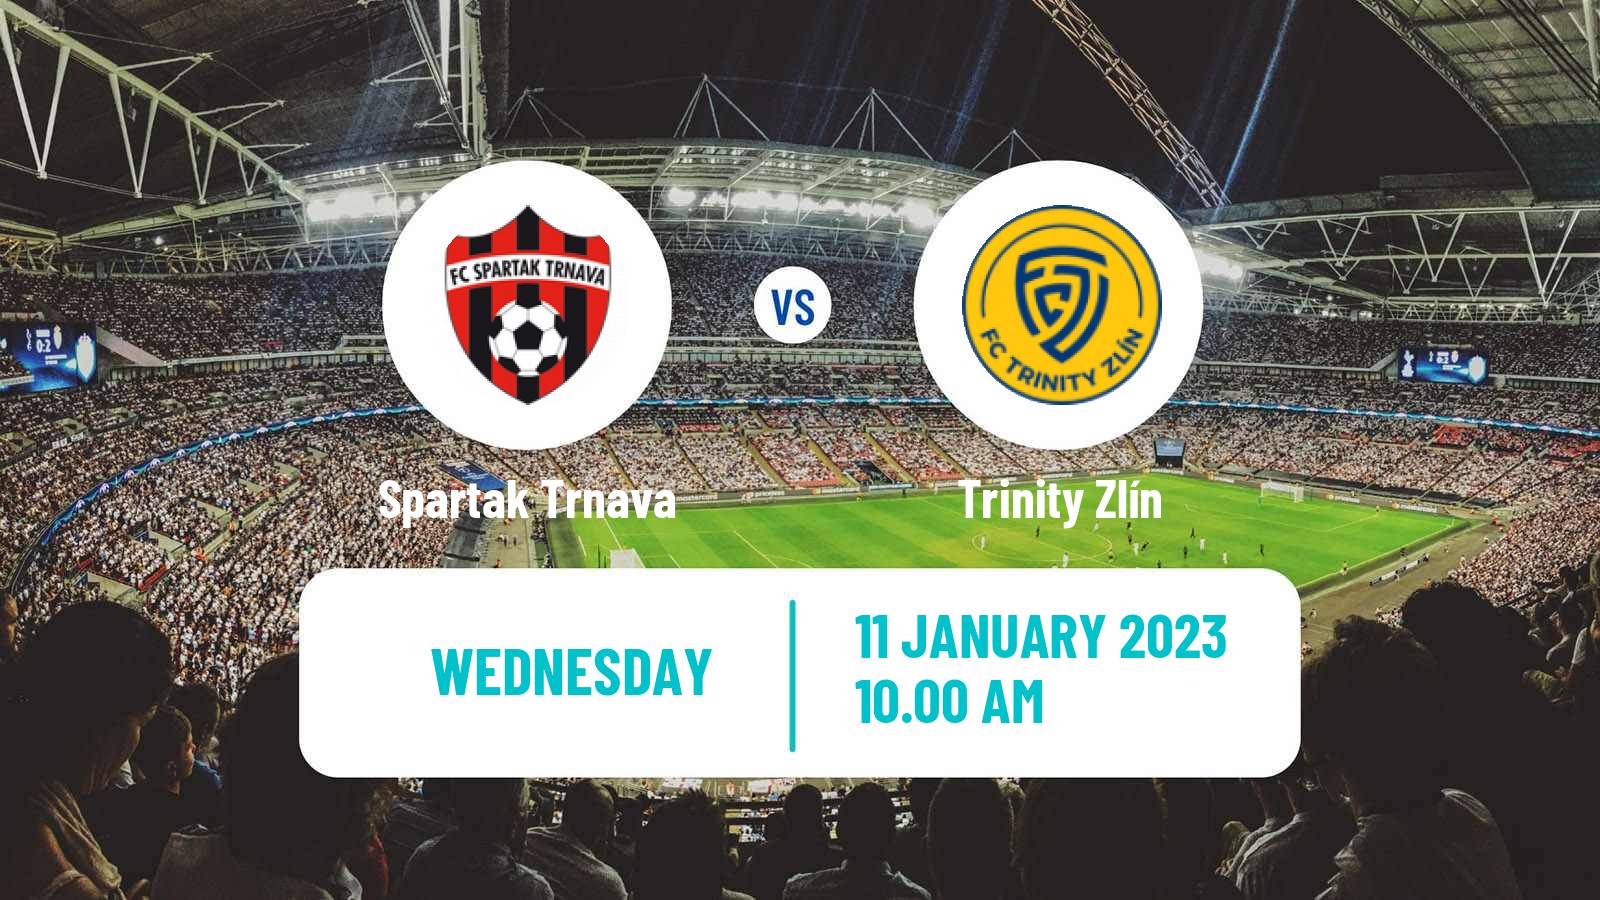 Soccer Tipsport Malta Cup Spartak Trnava - Trinity Zlín